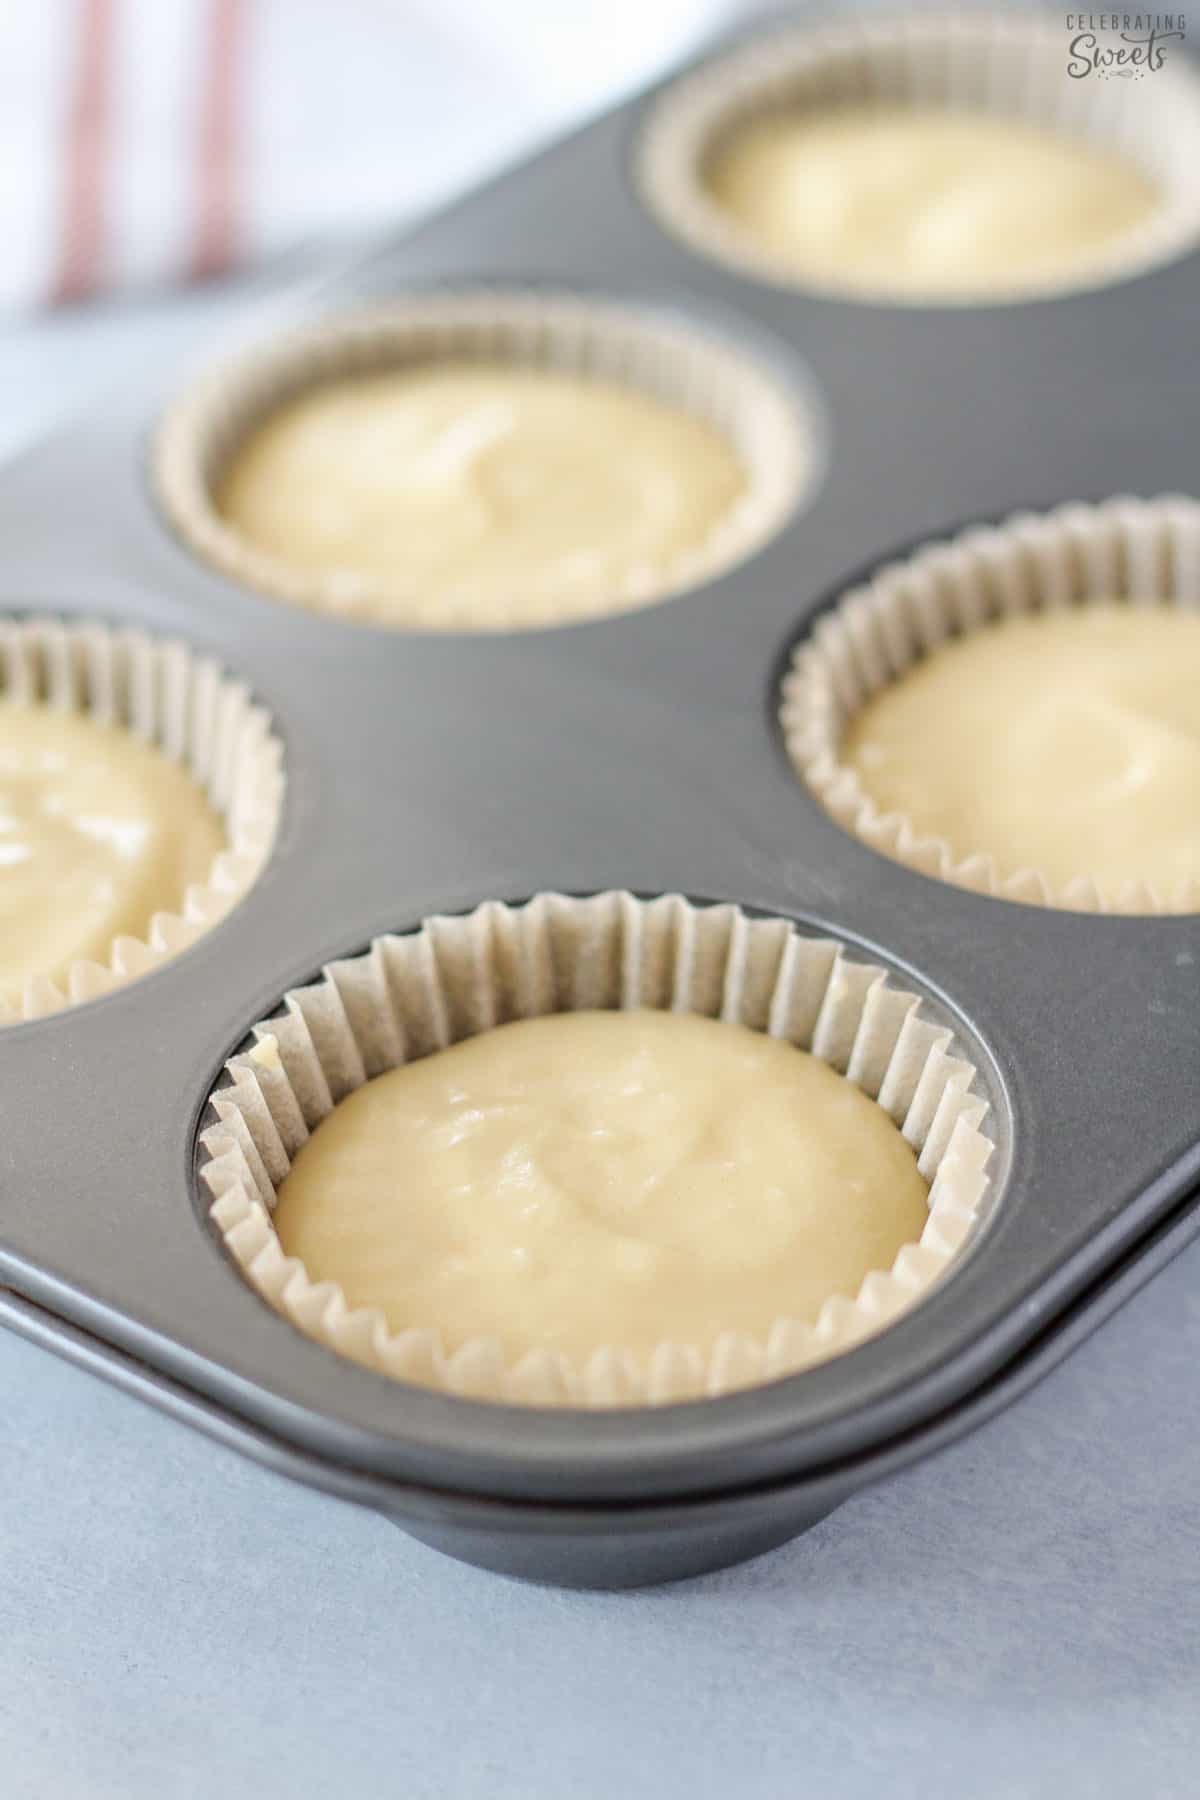 Vanilla cupcake batter in a muffin pan.